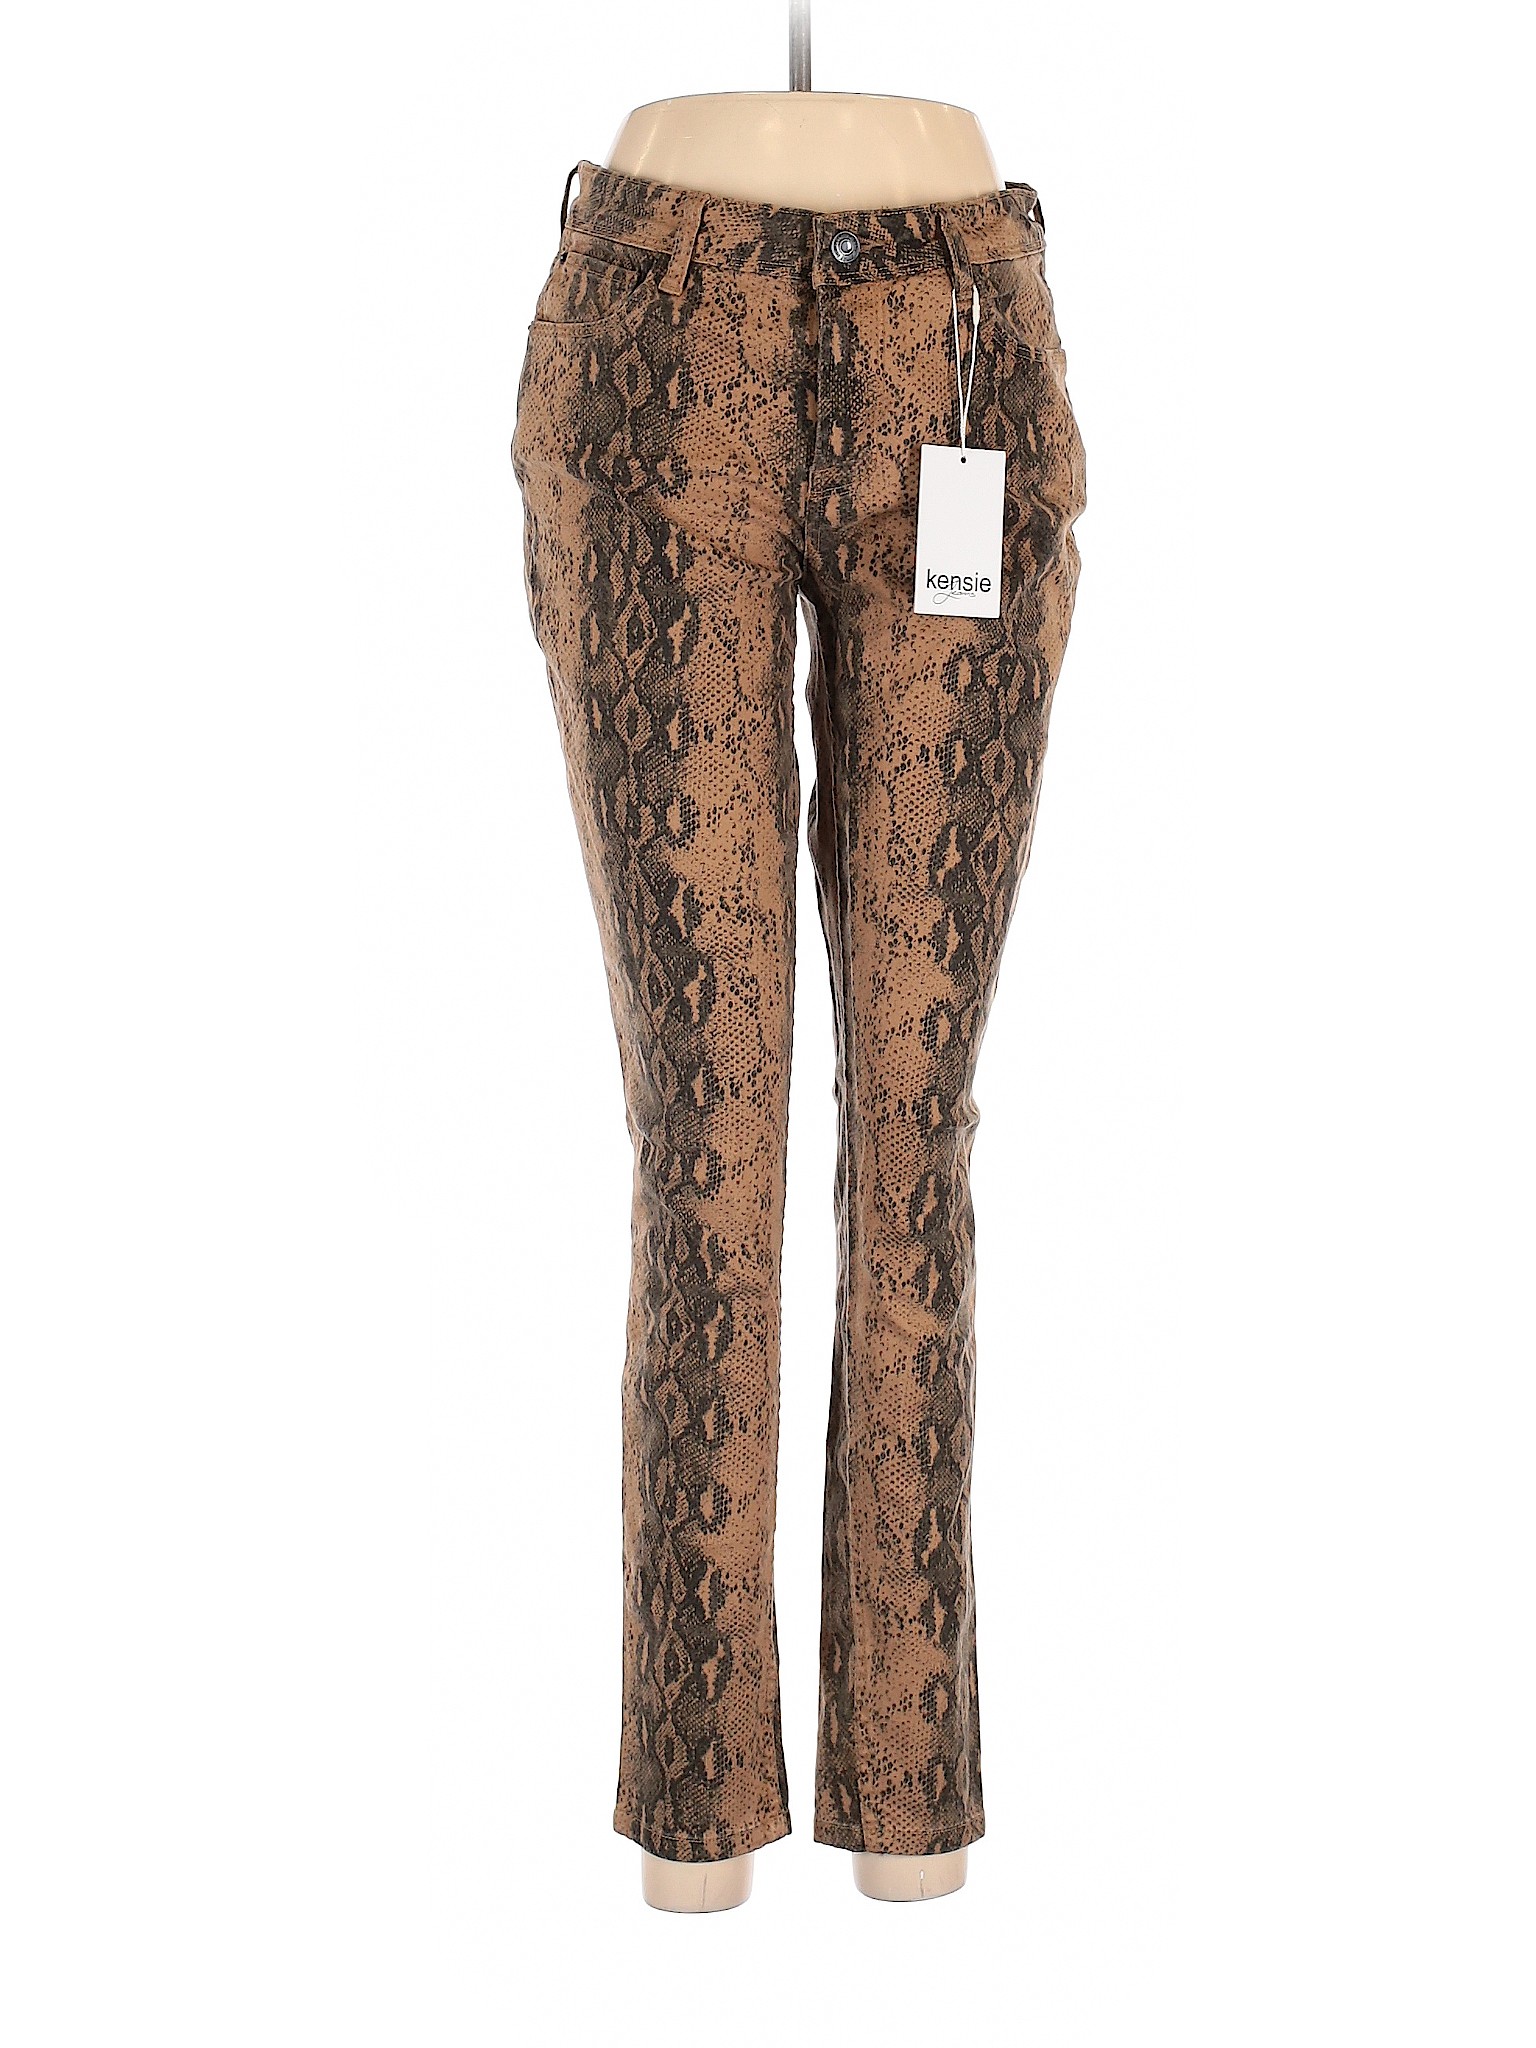 NWT Kensie Women Brown Jeans 6 | eBay